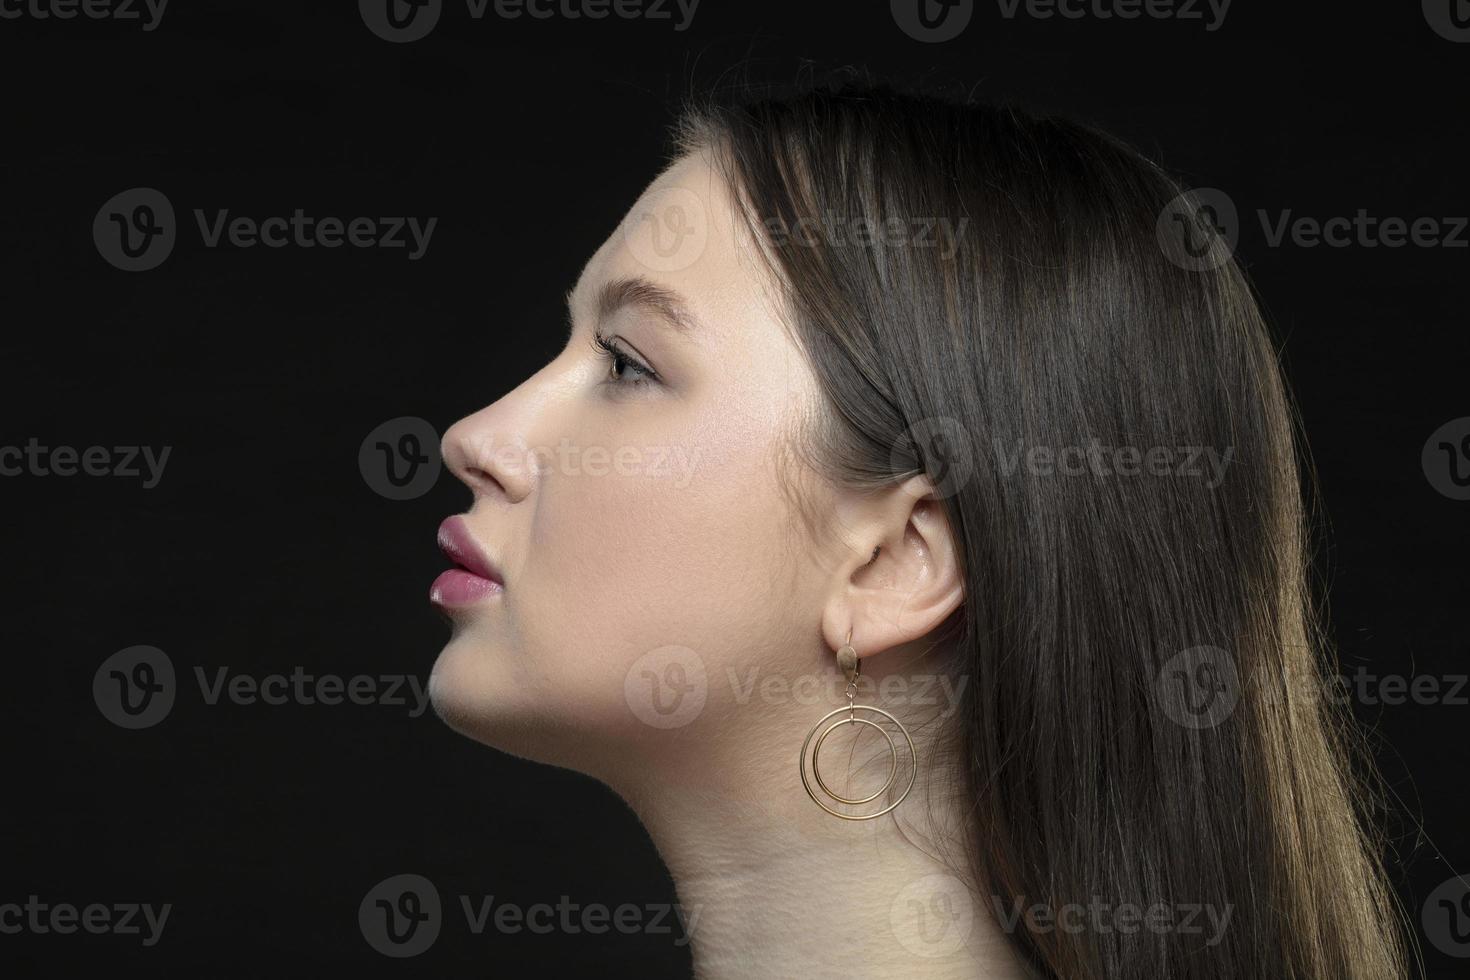 profil av en ung kvinna modell med perfekt sensuell mun och stängd ögon på en svart bakgrund. skön ansiktsbehandling hud, förstärkning av kvinna mun, glamorös elegans. foto